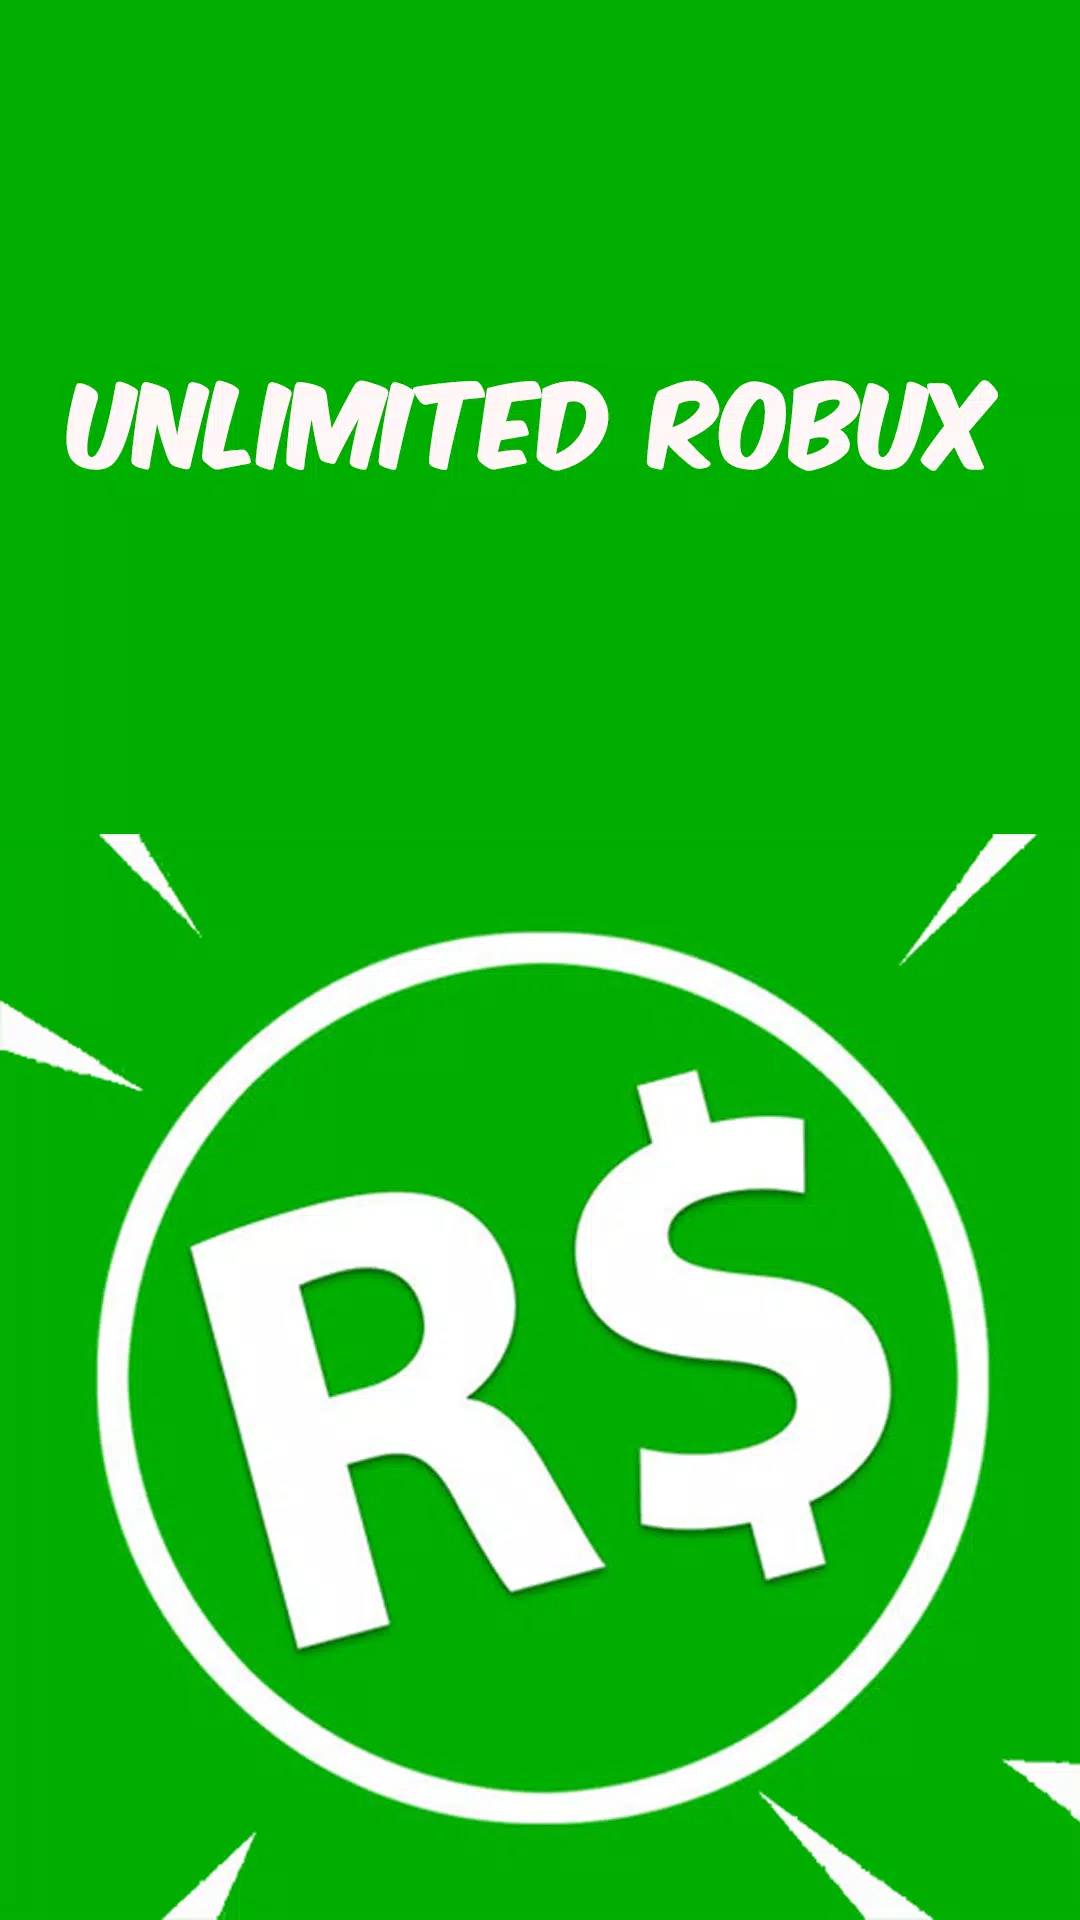 Download do APK de Robux Gratis para Roblox Guia, Dicas e Truques